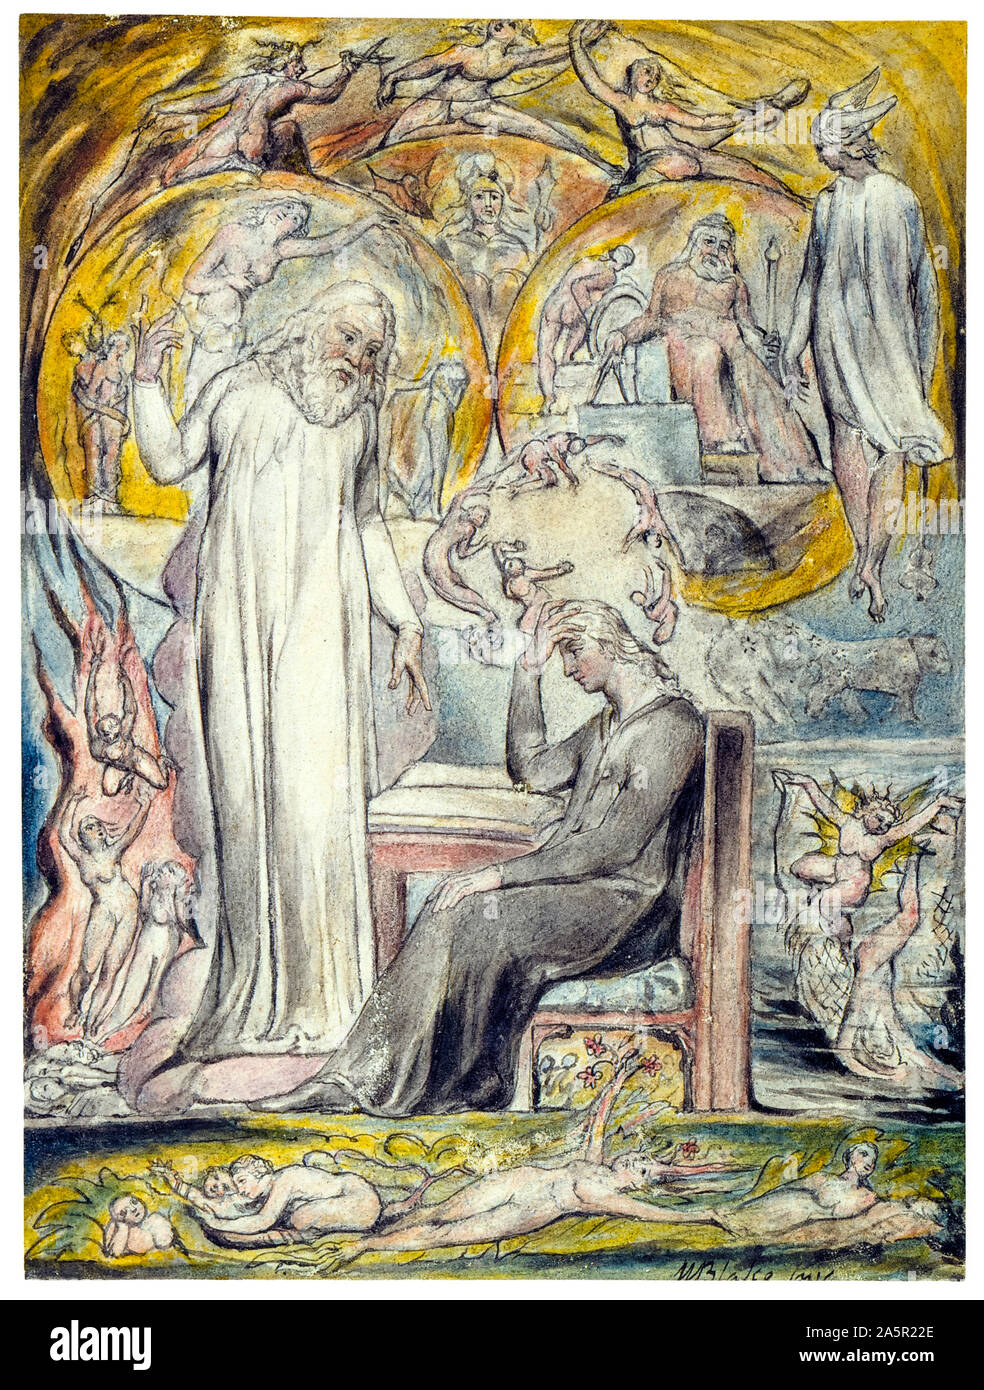 William Blake peinture, l'Esprit de Platon, 1816-1820, stylo et encre avec aquarelle, illustration Banque D'Images